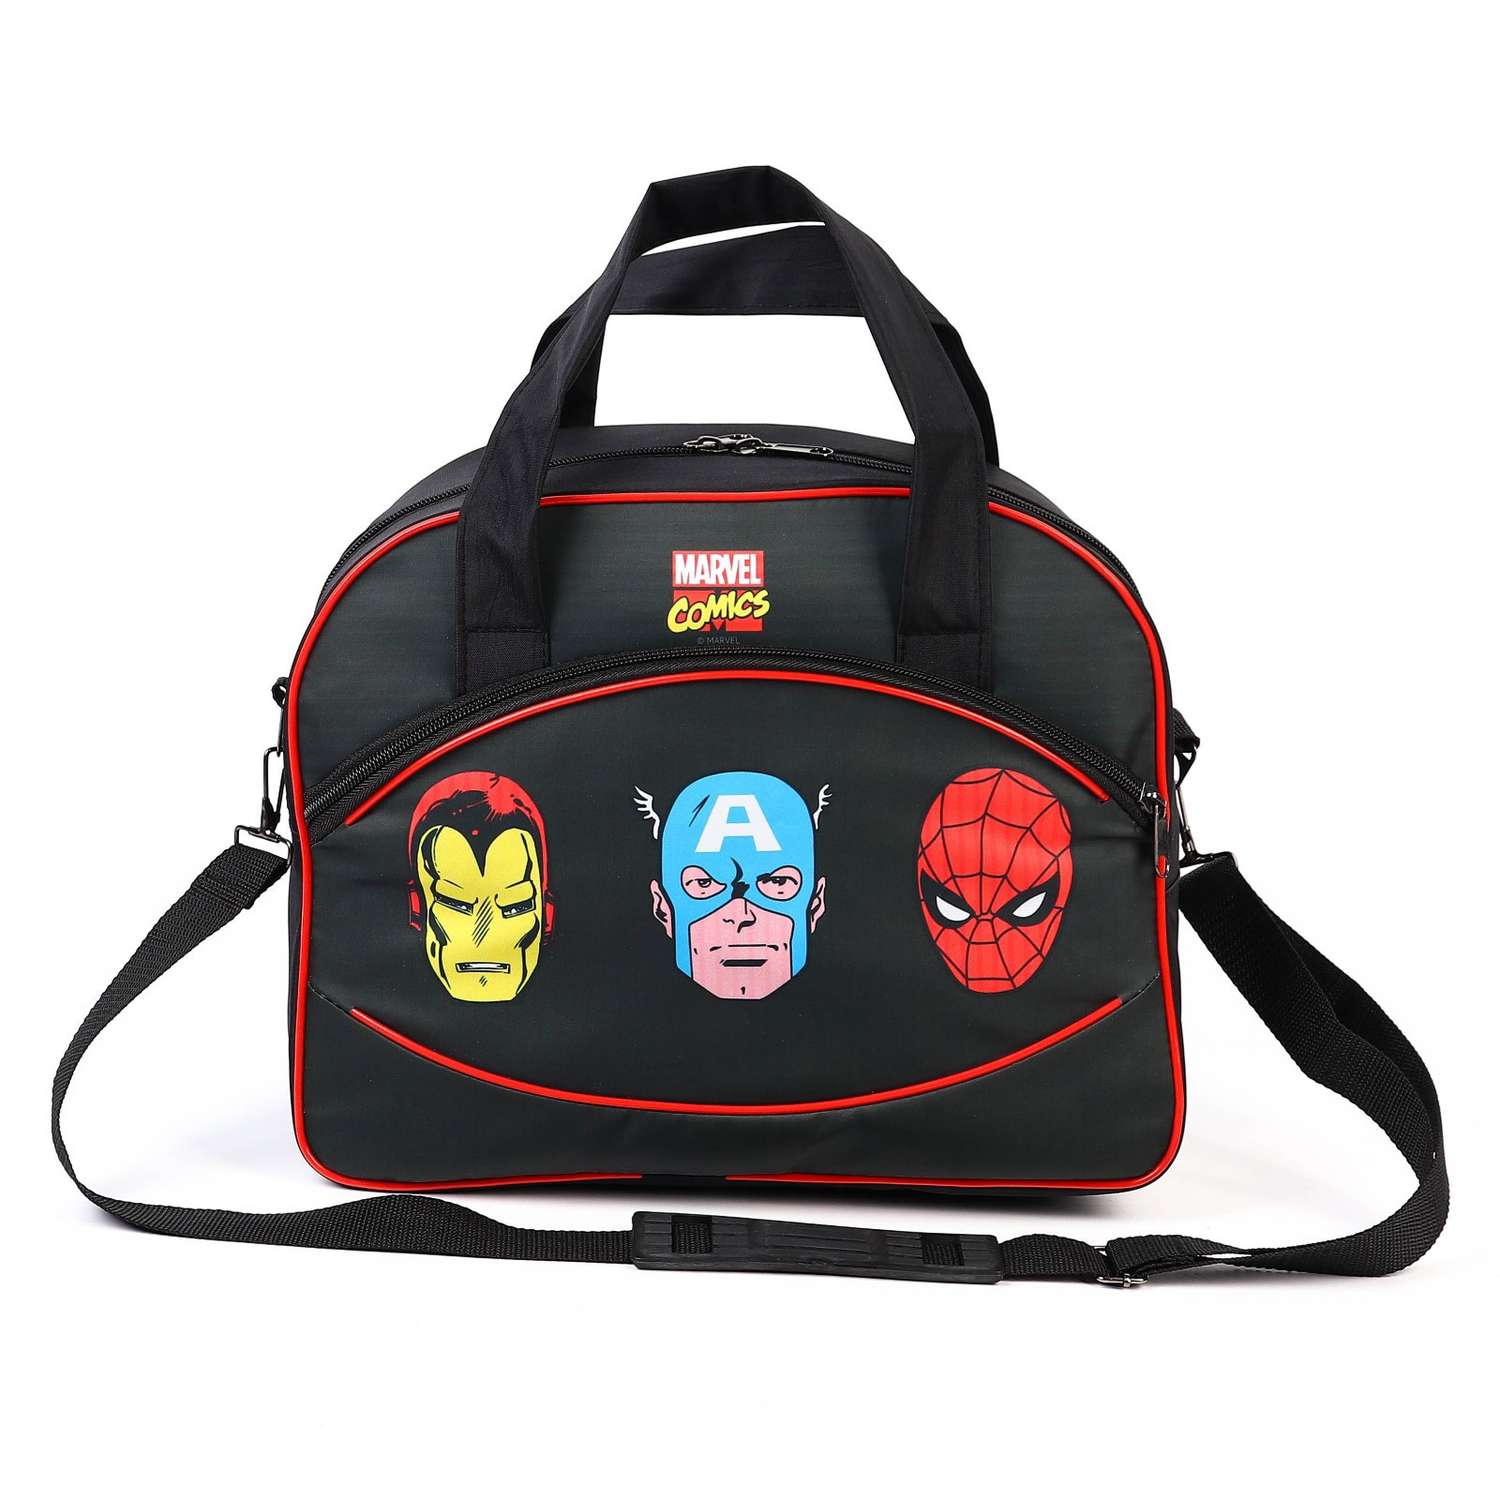 Чемодан Marvel с сумкой COMICS HEROES 52*21*34 см отдел на молнии н/карман 9728270 - фото 9